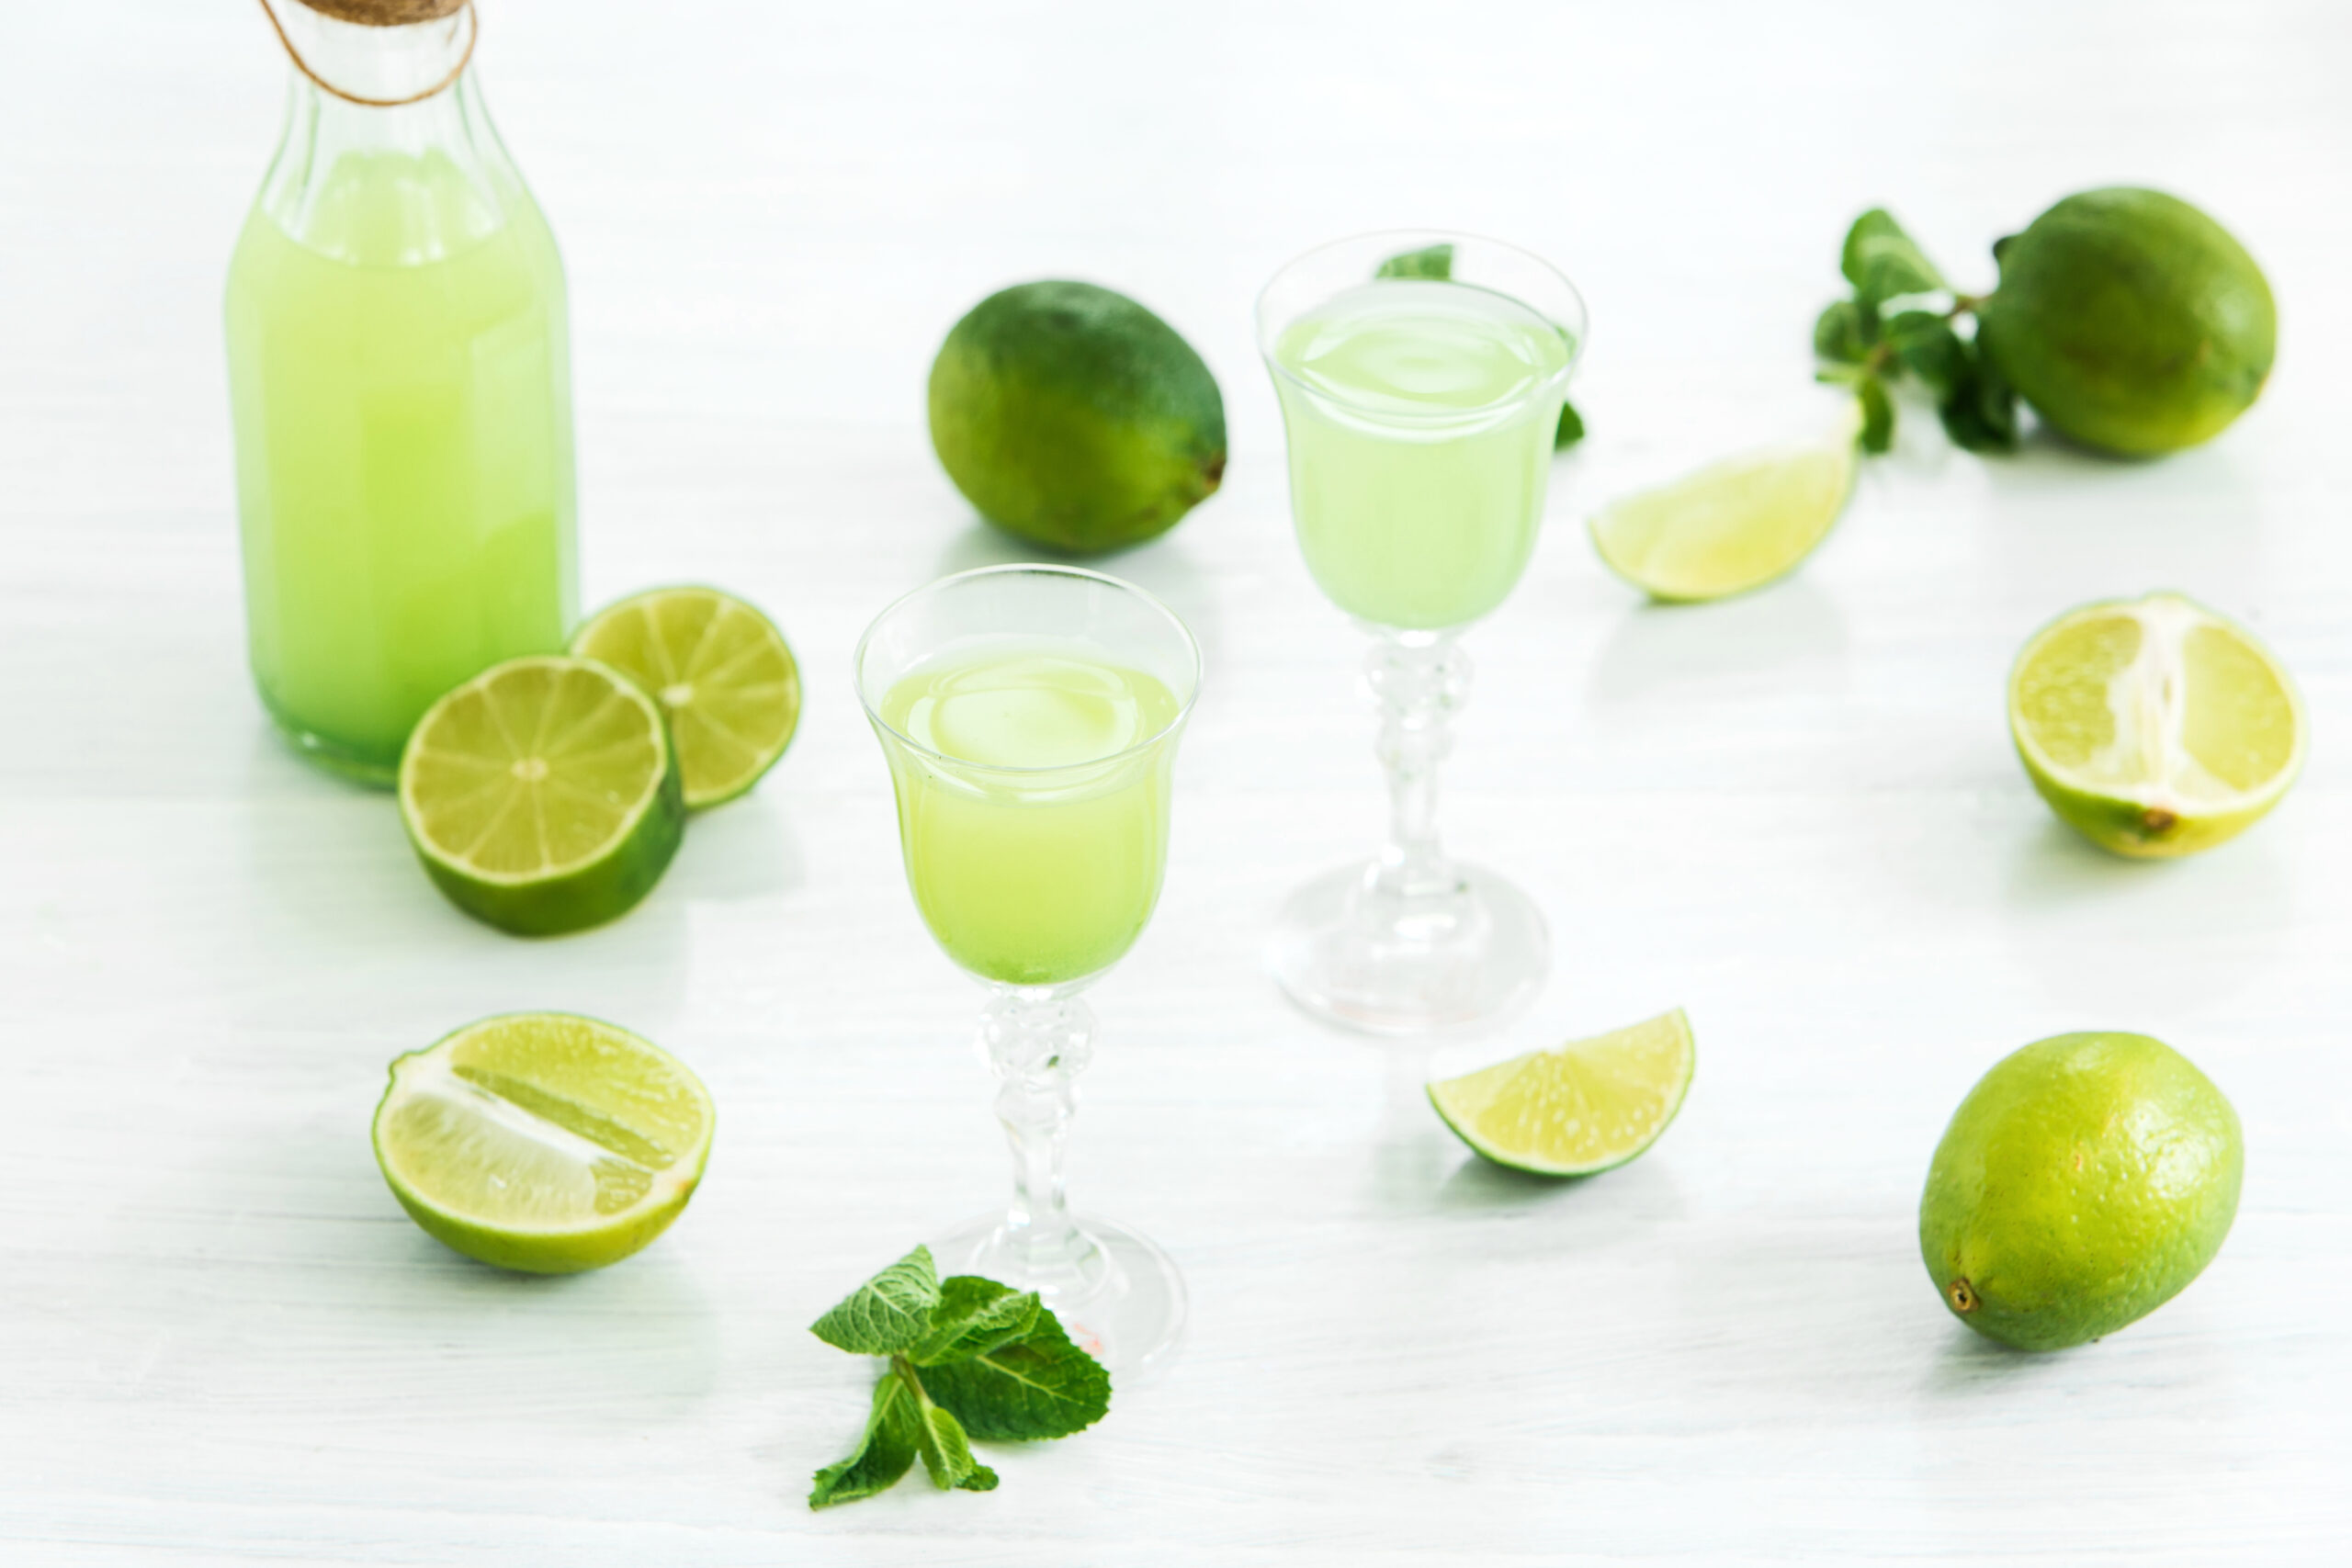 home-lime-liquor-glass-fresh-lemons-limes-white-scaled Descubra os 10 cafés da manhã que ajudam a emagrecer Receitas Fitness  